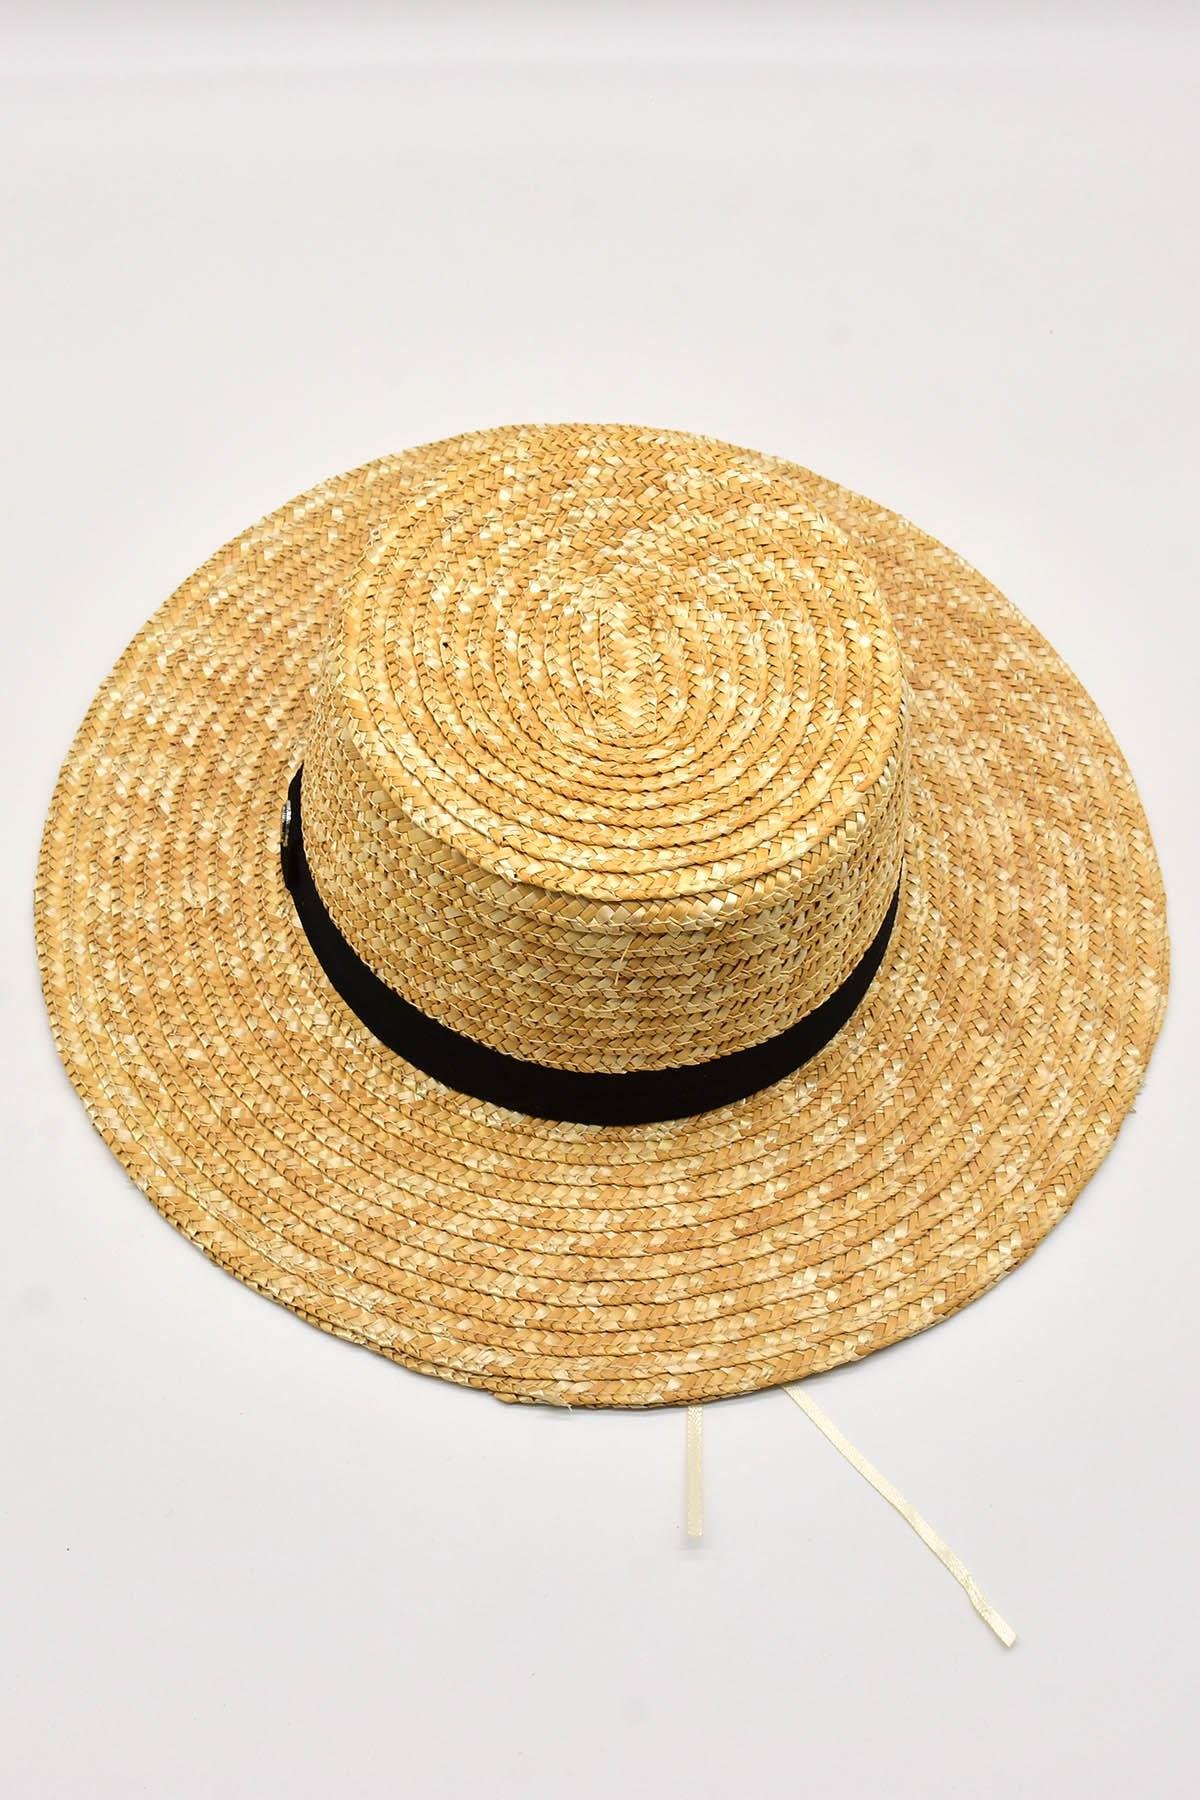 Külah Hasır Şapka Bantlı Plaj Güneş Şapkası KLH0803